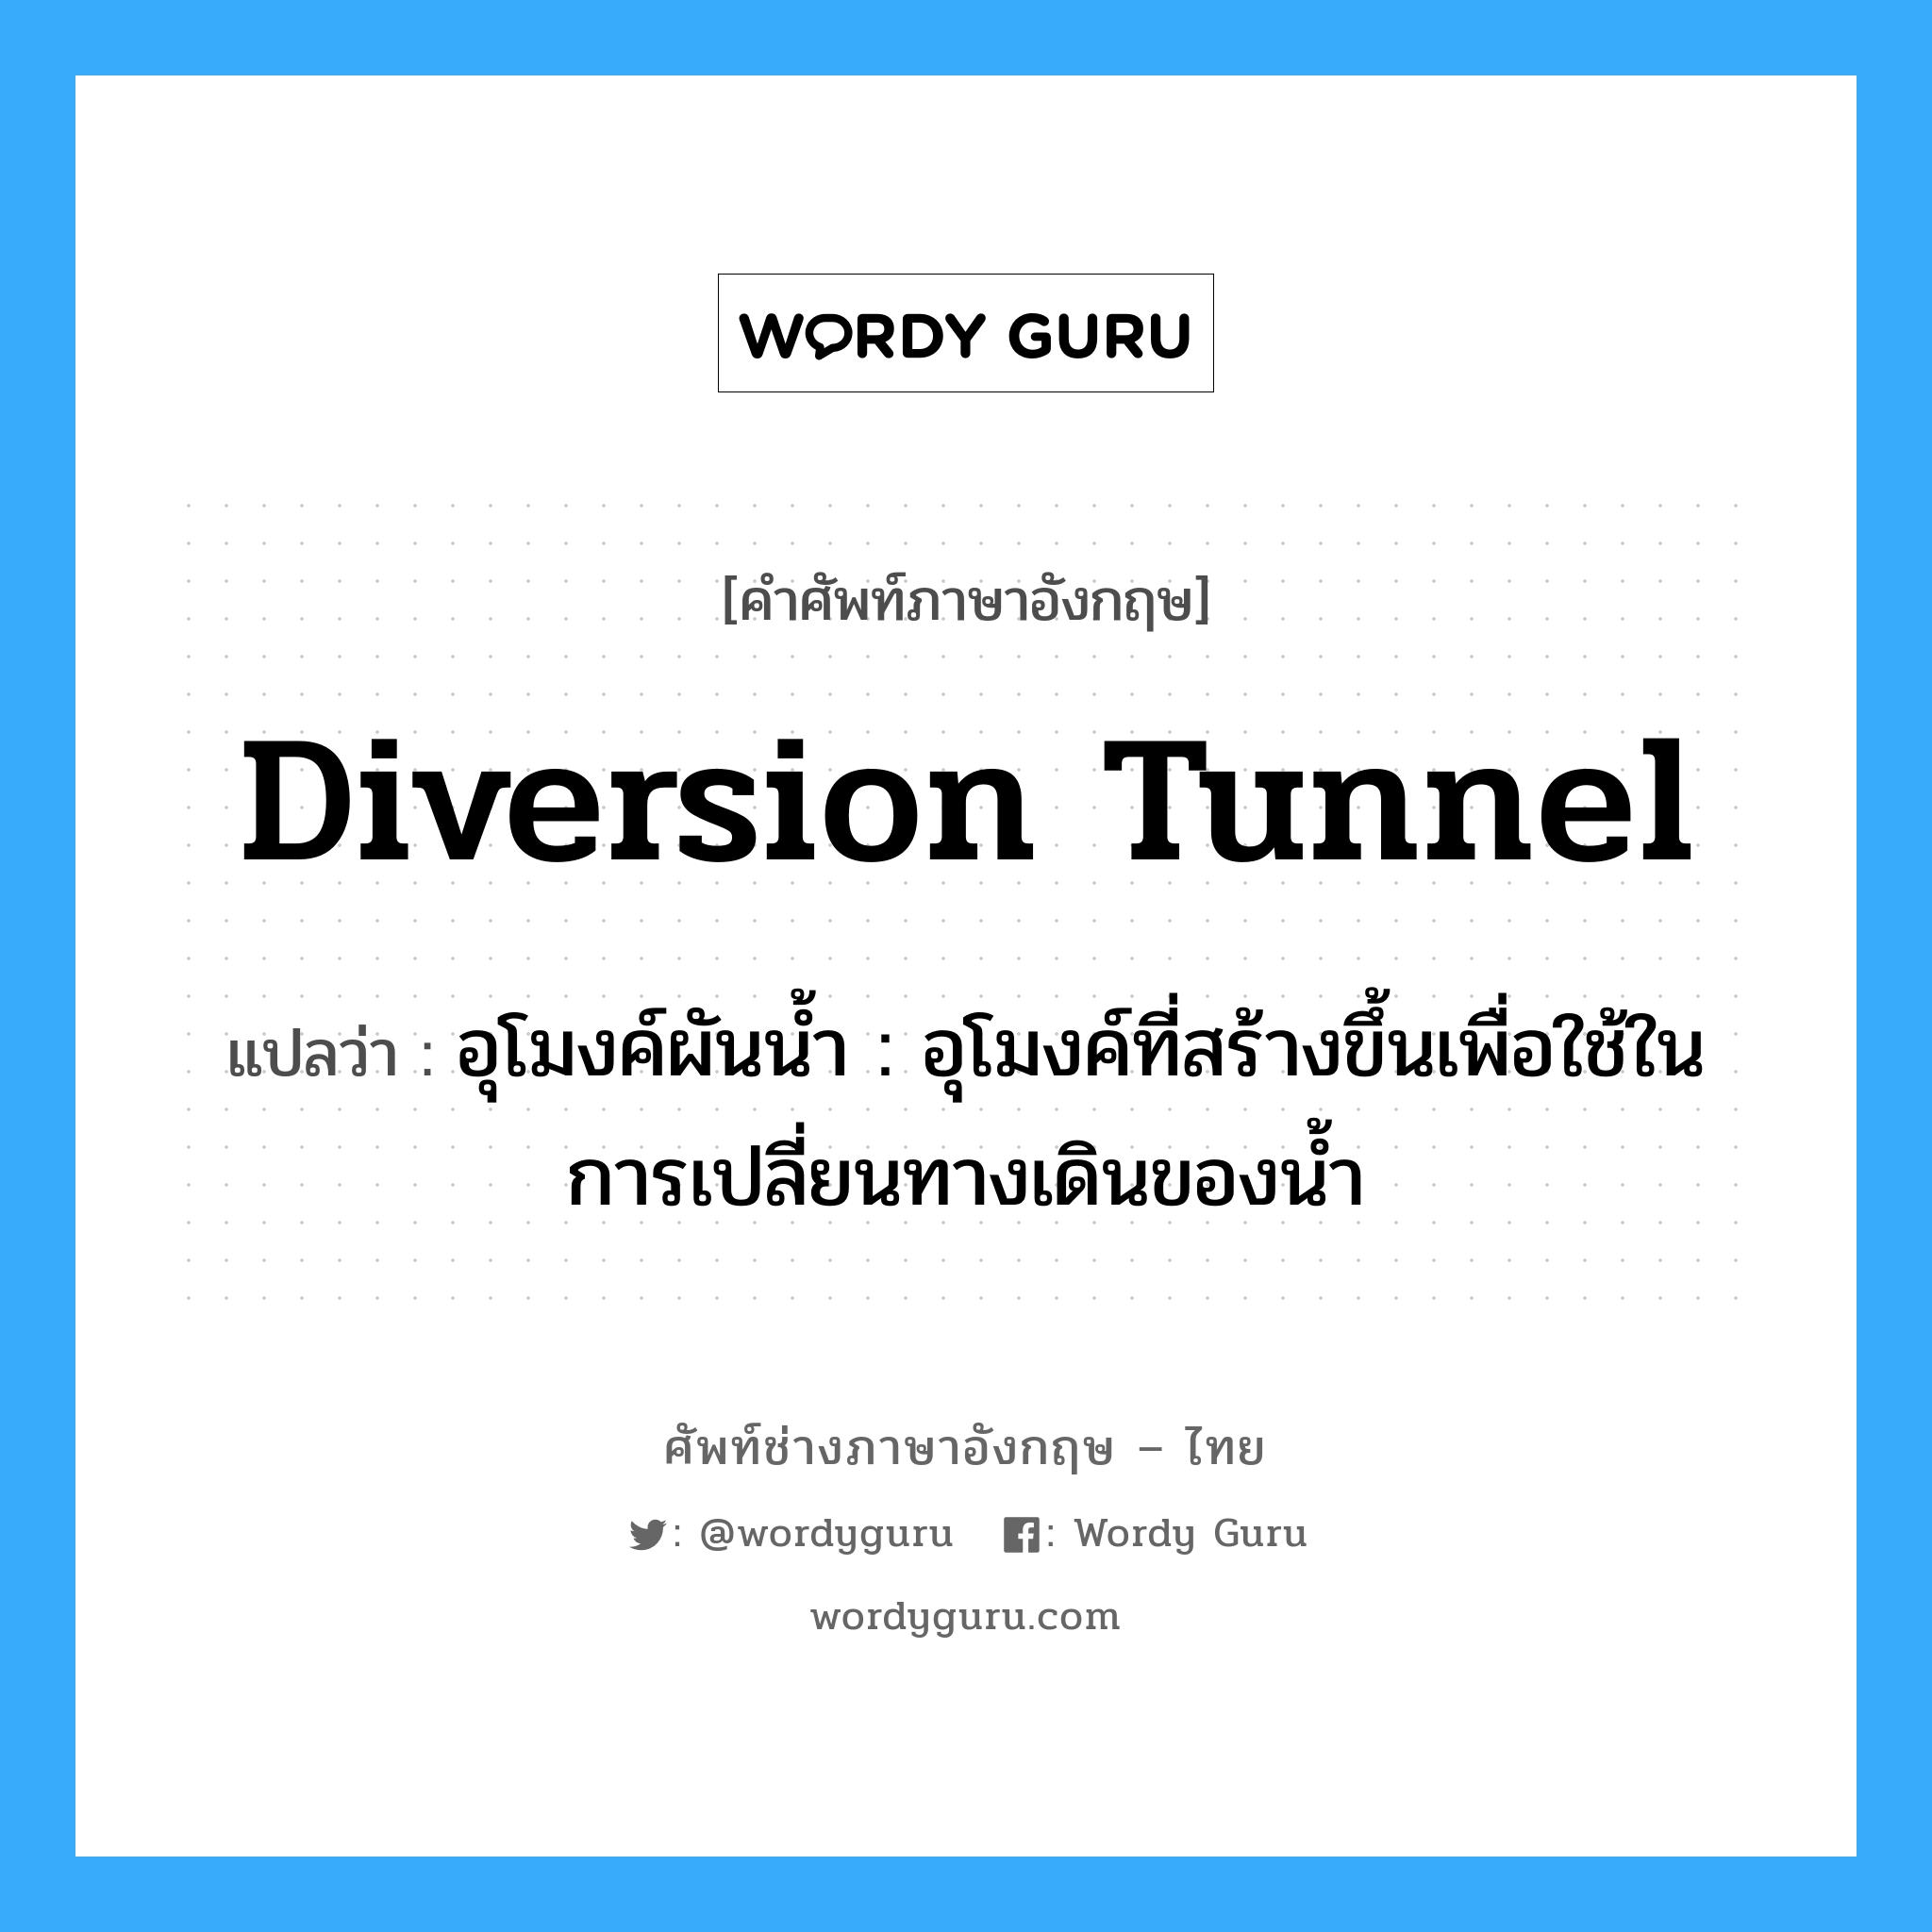 diversion tunnel แปลว่า?, คำศัพท์ช่างภาษาอังกฤษ - ไทย diversion tunnel คำศัพท์ภาษาอังกฤษ diversion tunnel แปลว่า อุโมงค์ผันน้ำ : อุโมงค์ที่สร้างขึ้นเพื่อใช้ในการเปลี่ยนทางเดินของน้ำ